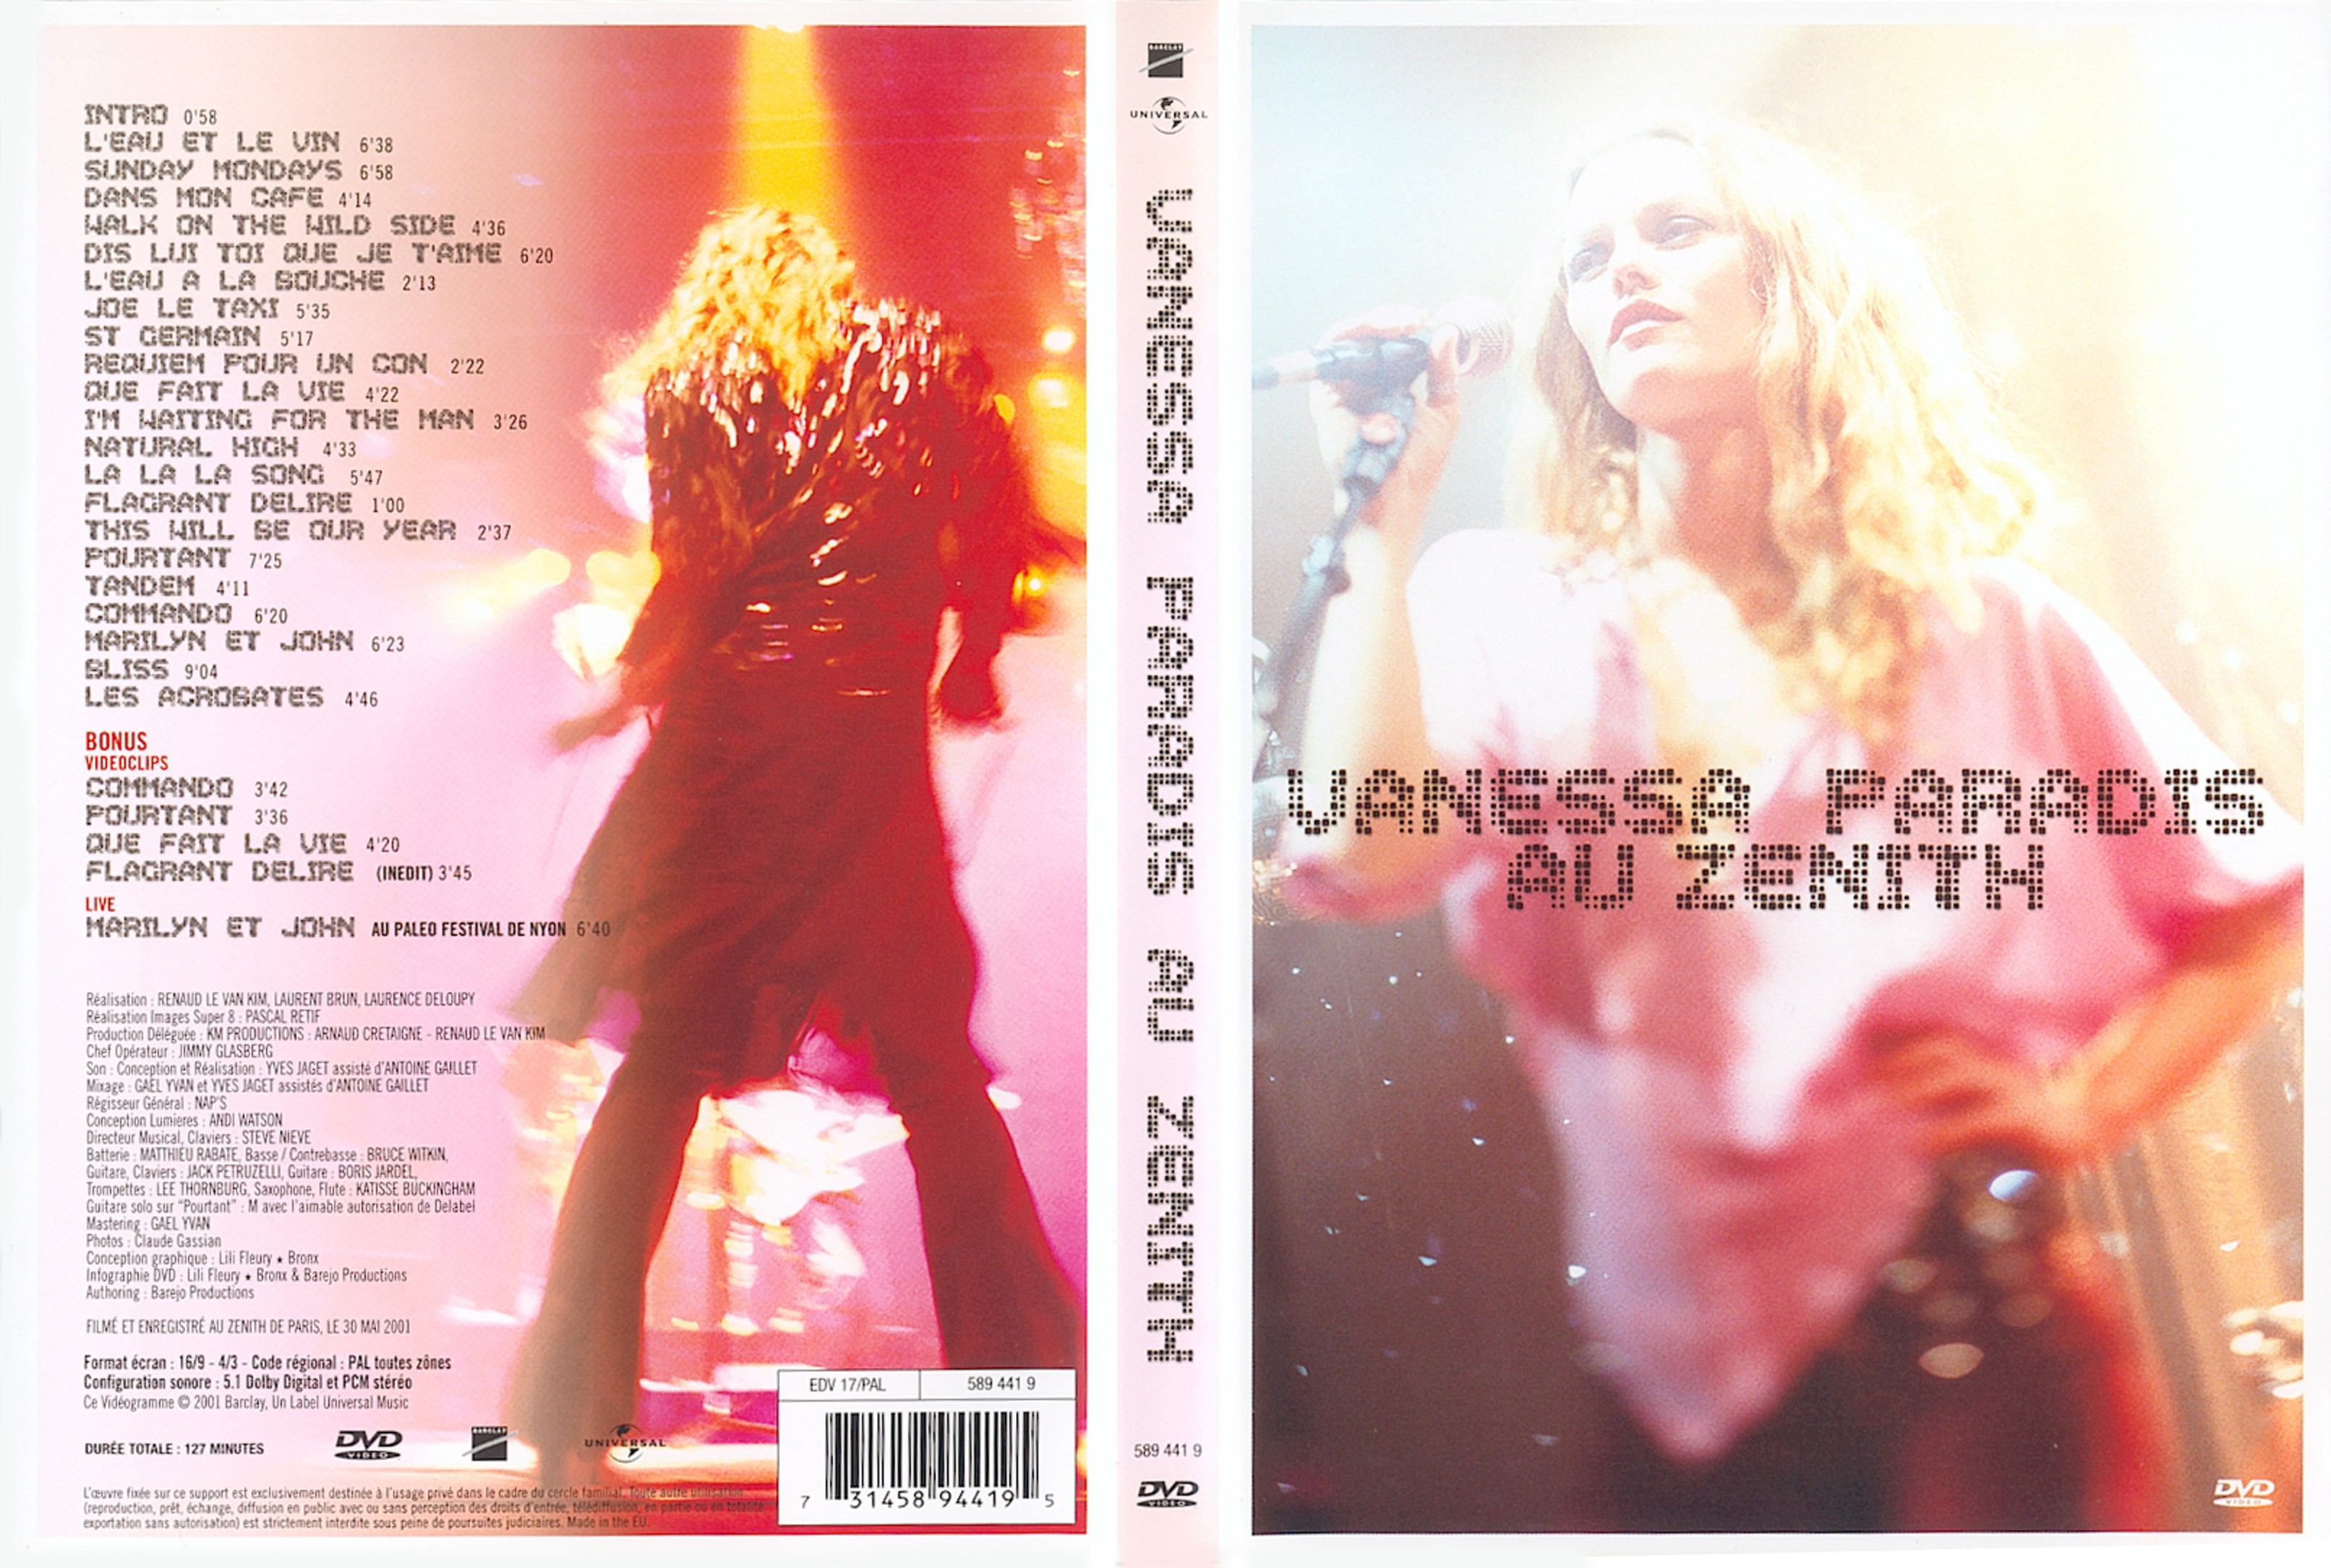 Jaquette DVD Vanessa Paradis au zenith